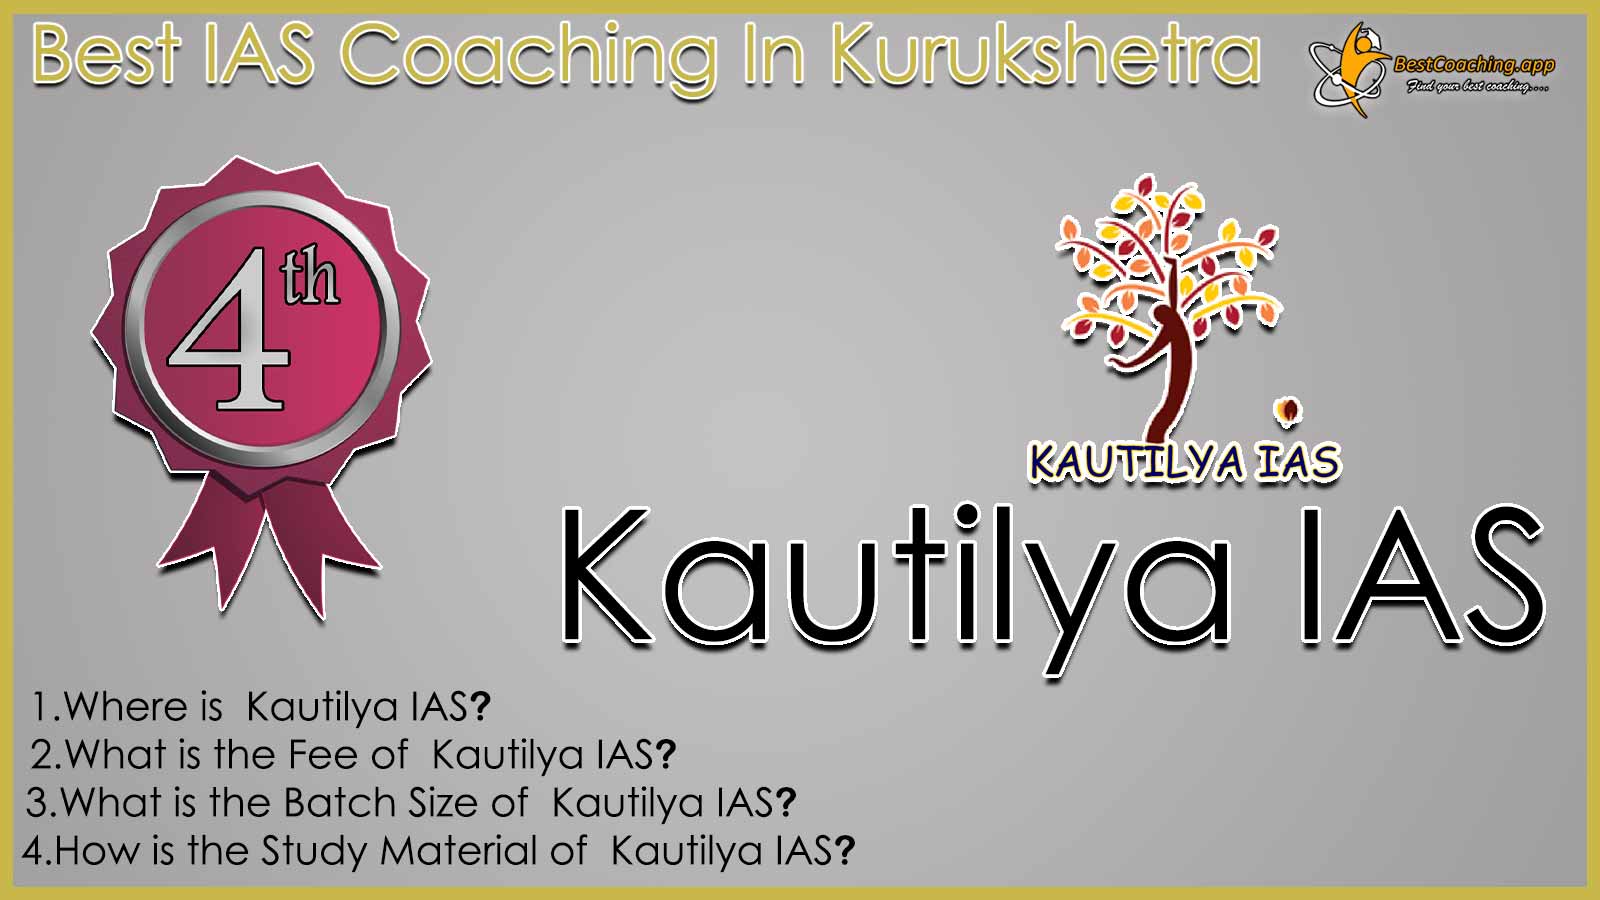 Top IAS Coaching in Kurukshetra